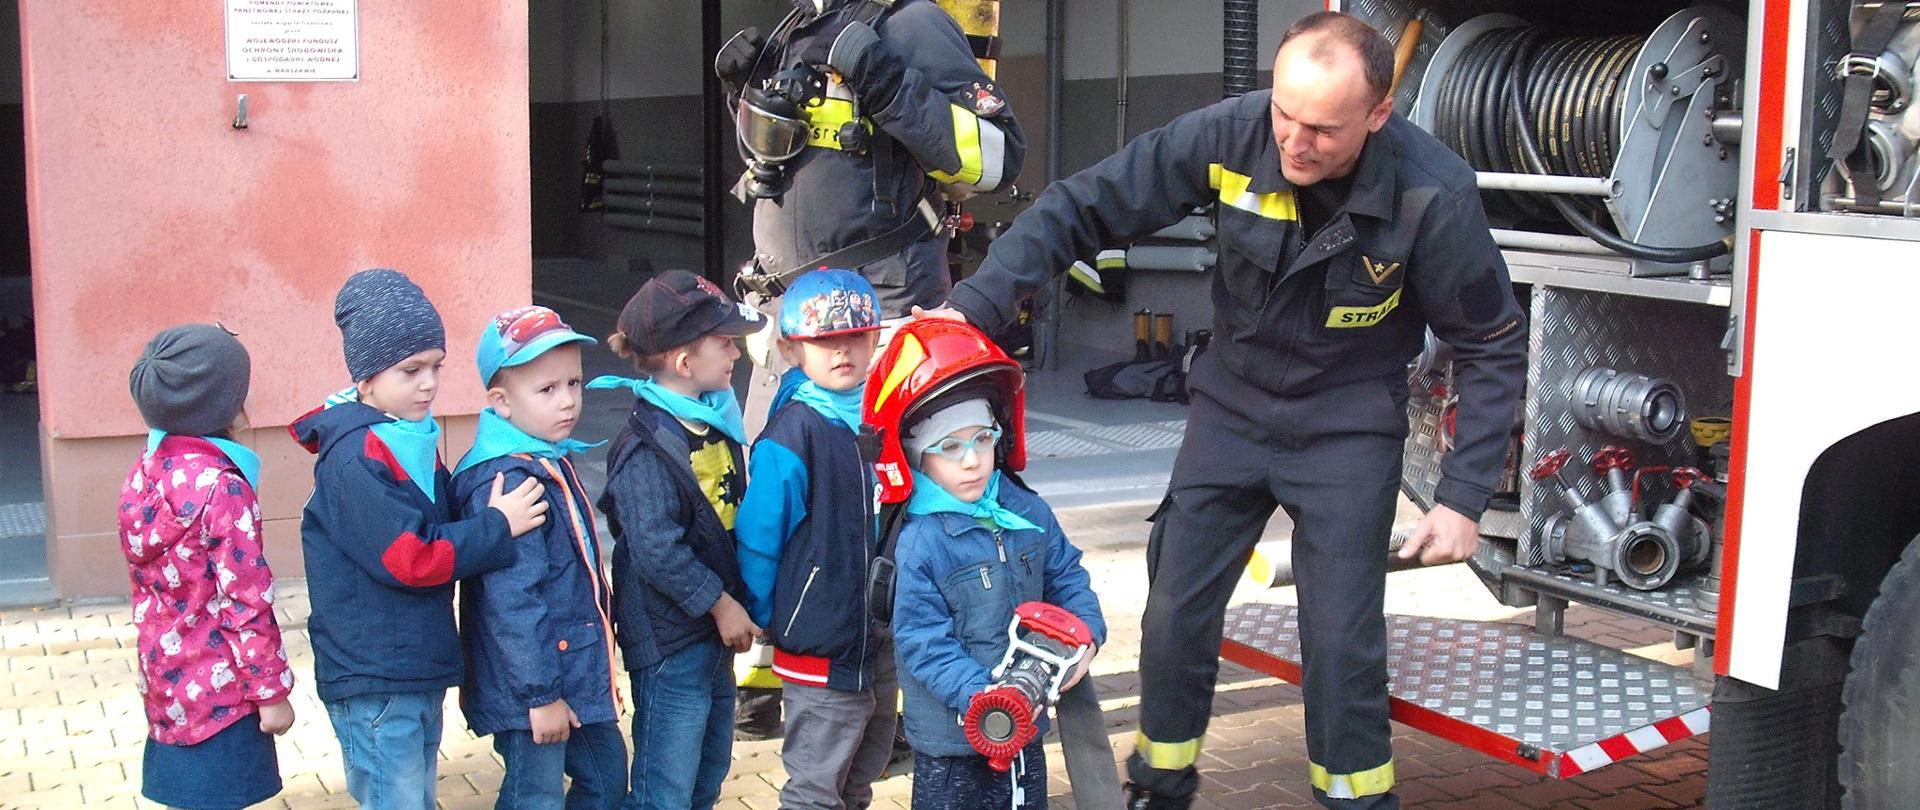 Chłopiec w hełmie strażackim trzyma w rękach prądownicę z podpiętym wężem. Obok stoi strażak i podtrzymuje hełm na głowie chłopca. Za chłopcem kolejka dzieci.